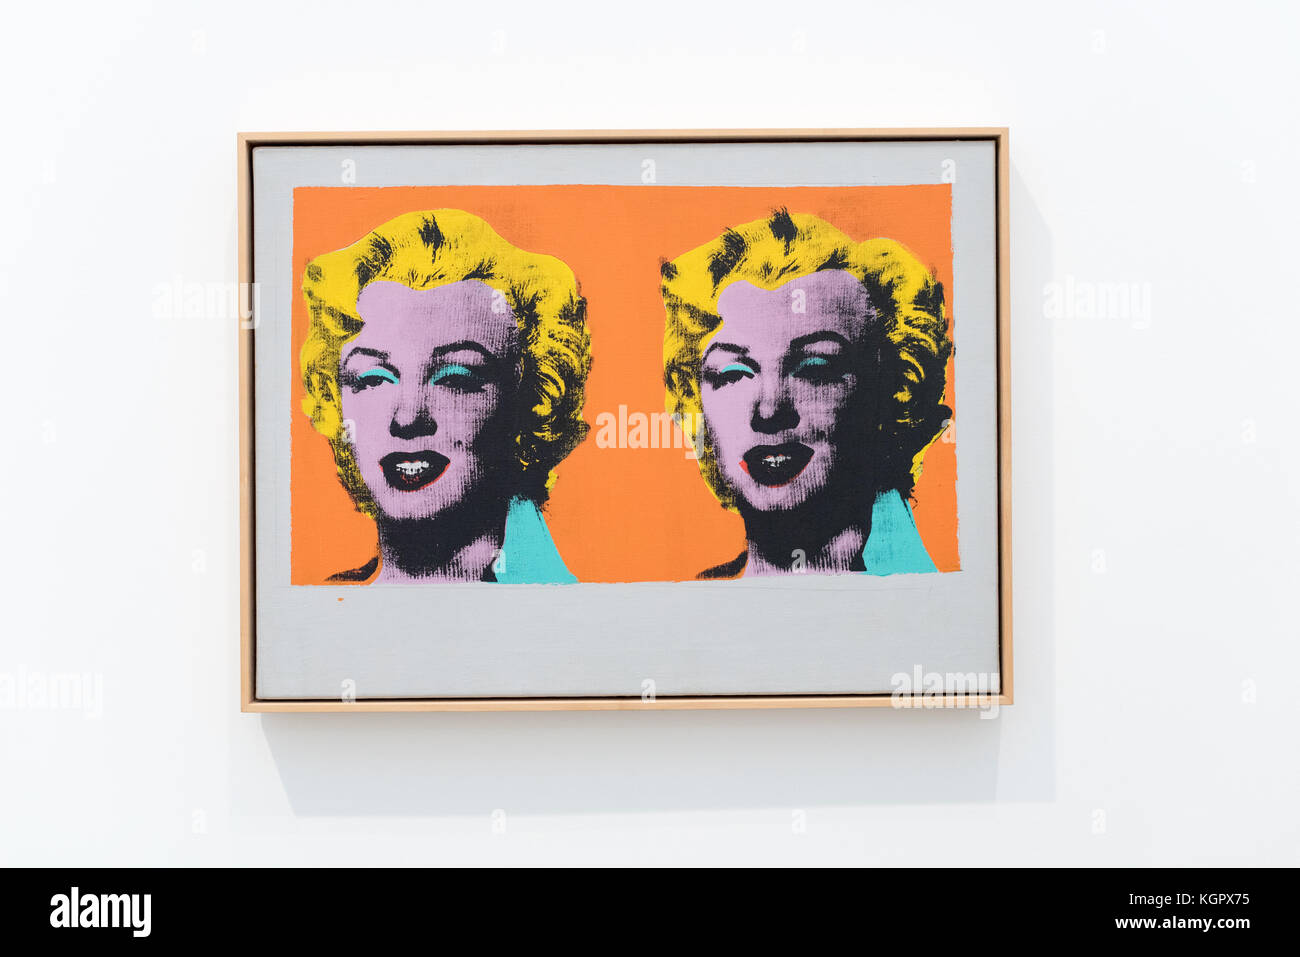 LOS ANGELES, CA - 5 de febrero de 2017: Andy Warhol en el Museo Broad que es un museo de arte contemporáneo en el centro de los Ángeles el 5 de febrero de 2017. Foto de stock